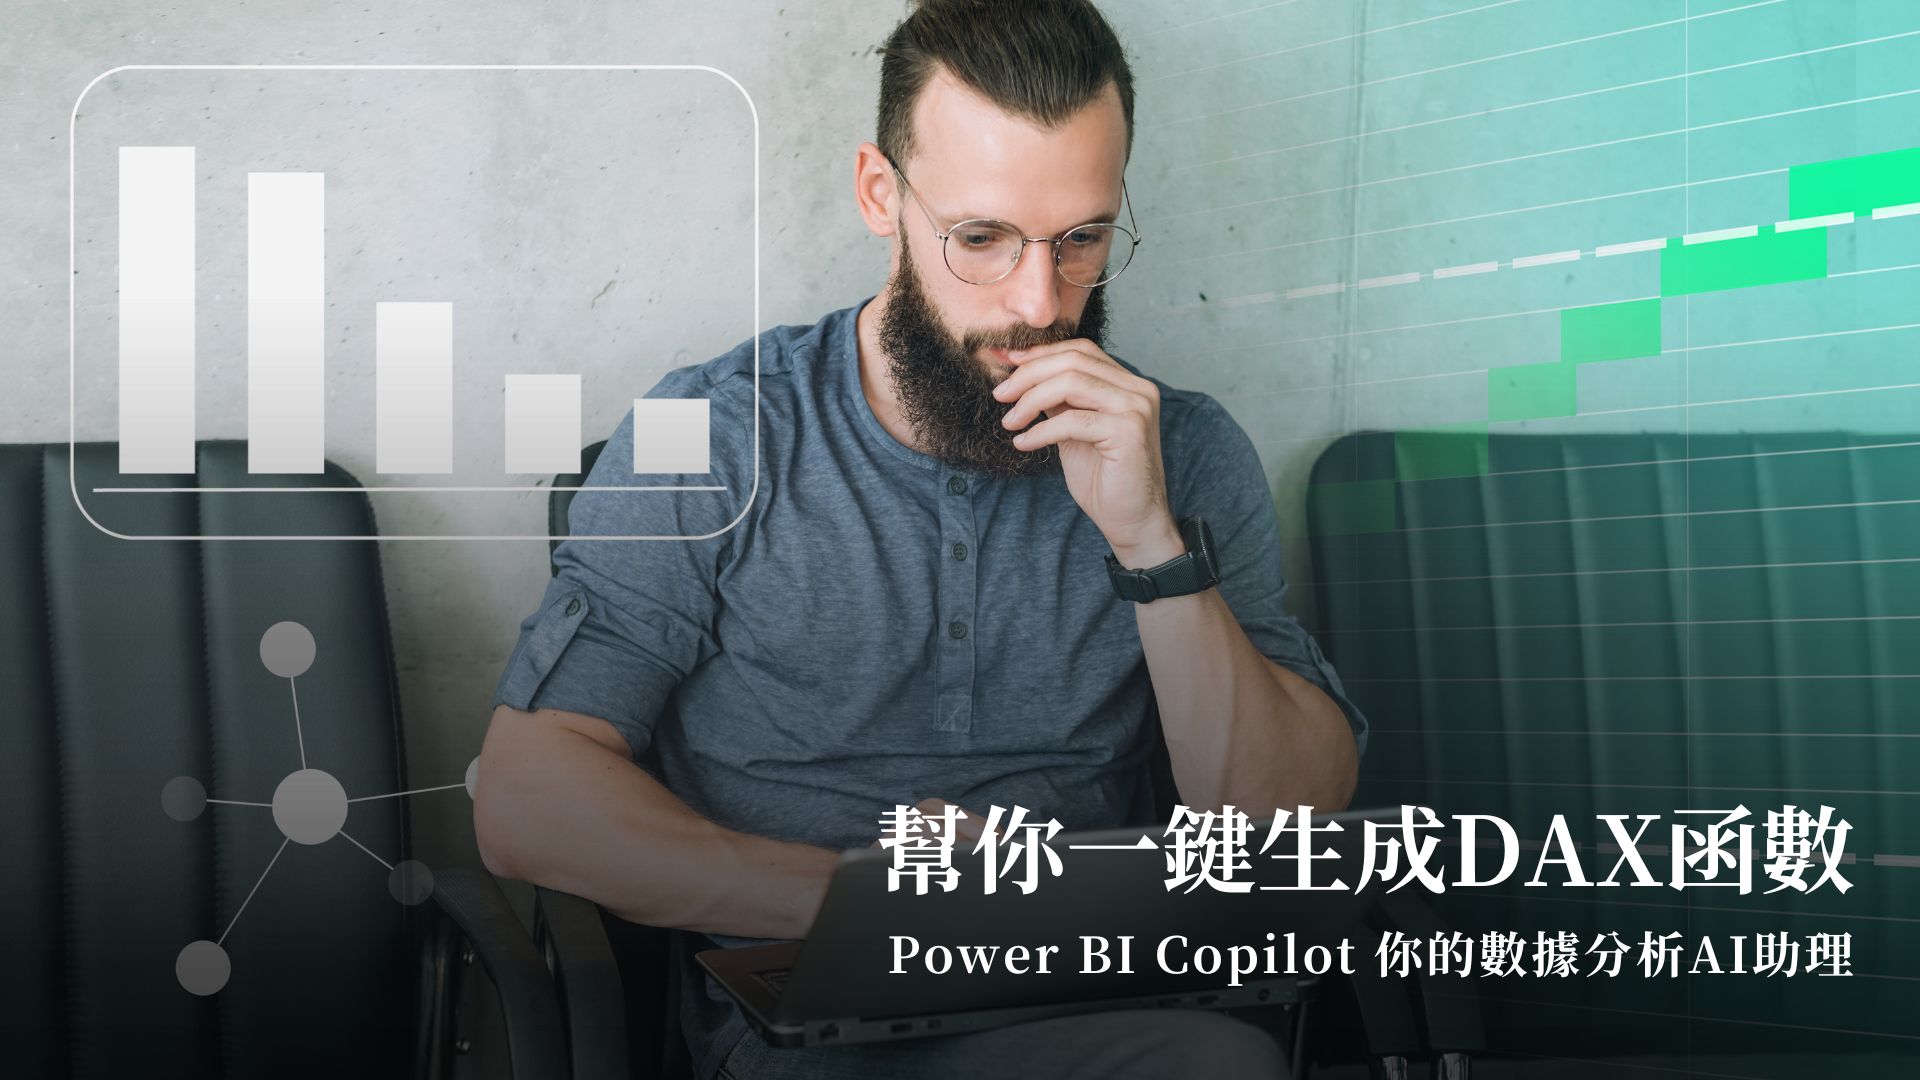 Power BI Copilot你的數據分析AI助理，幫你一鍵生成DAX函數